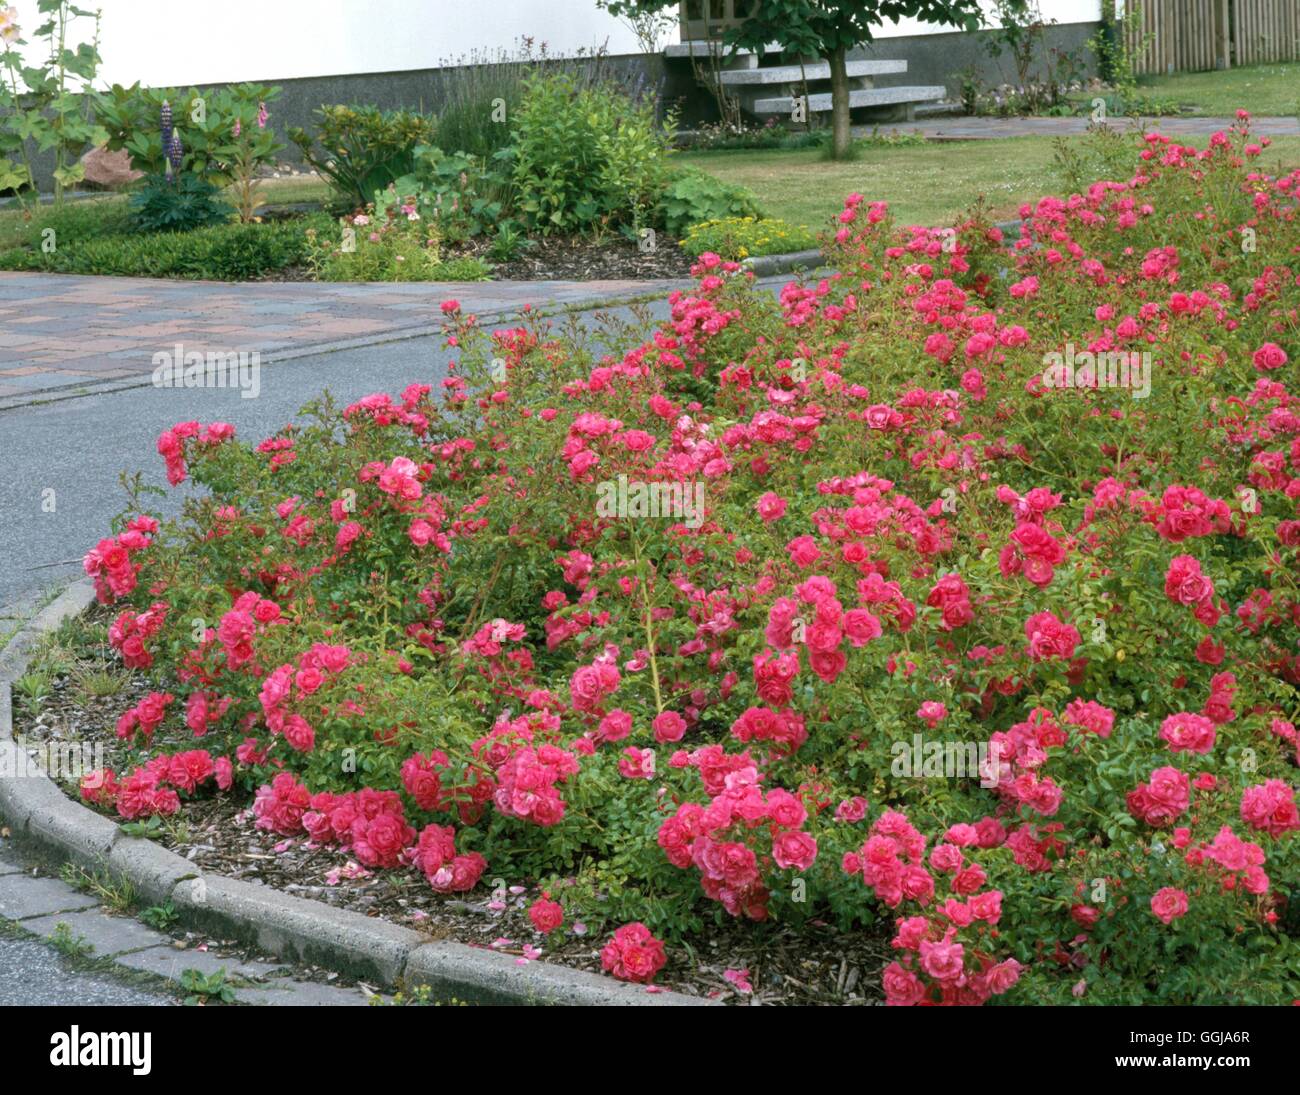 La couverture du sol avec des roses - CLG084374 Banque D'Images